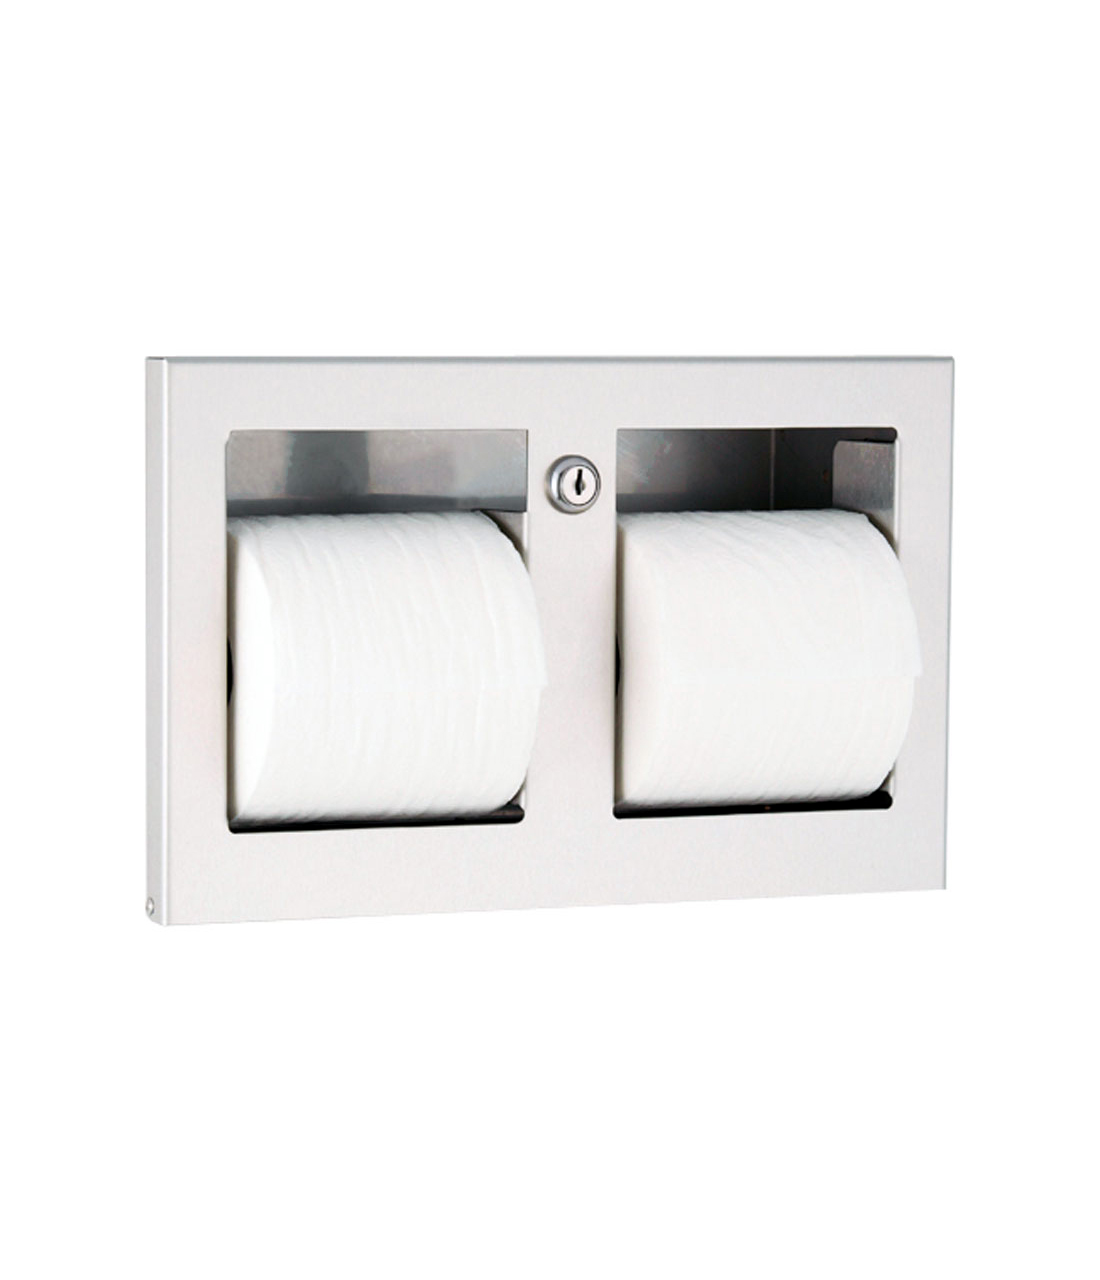 Recessed Multi-Roll Toilet Tissue Dispenser - (Model #: ttd-9) main image